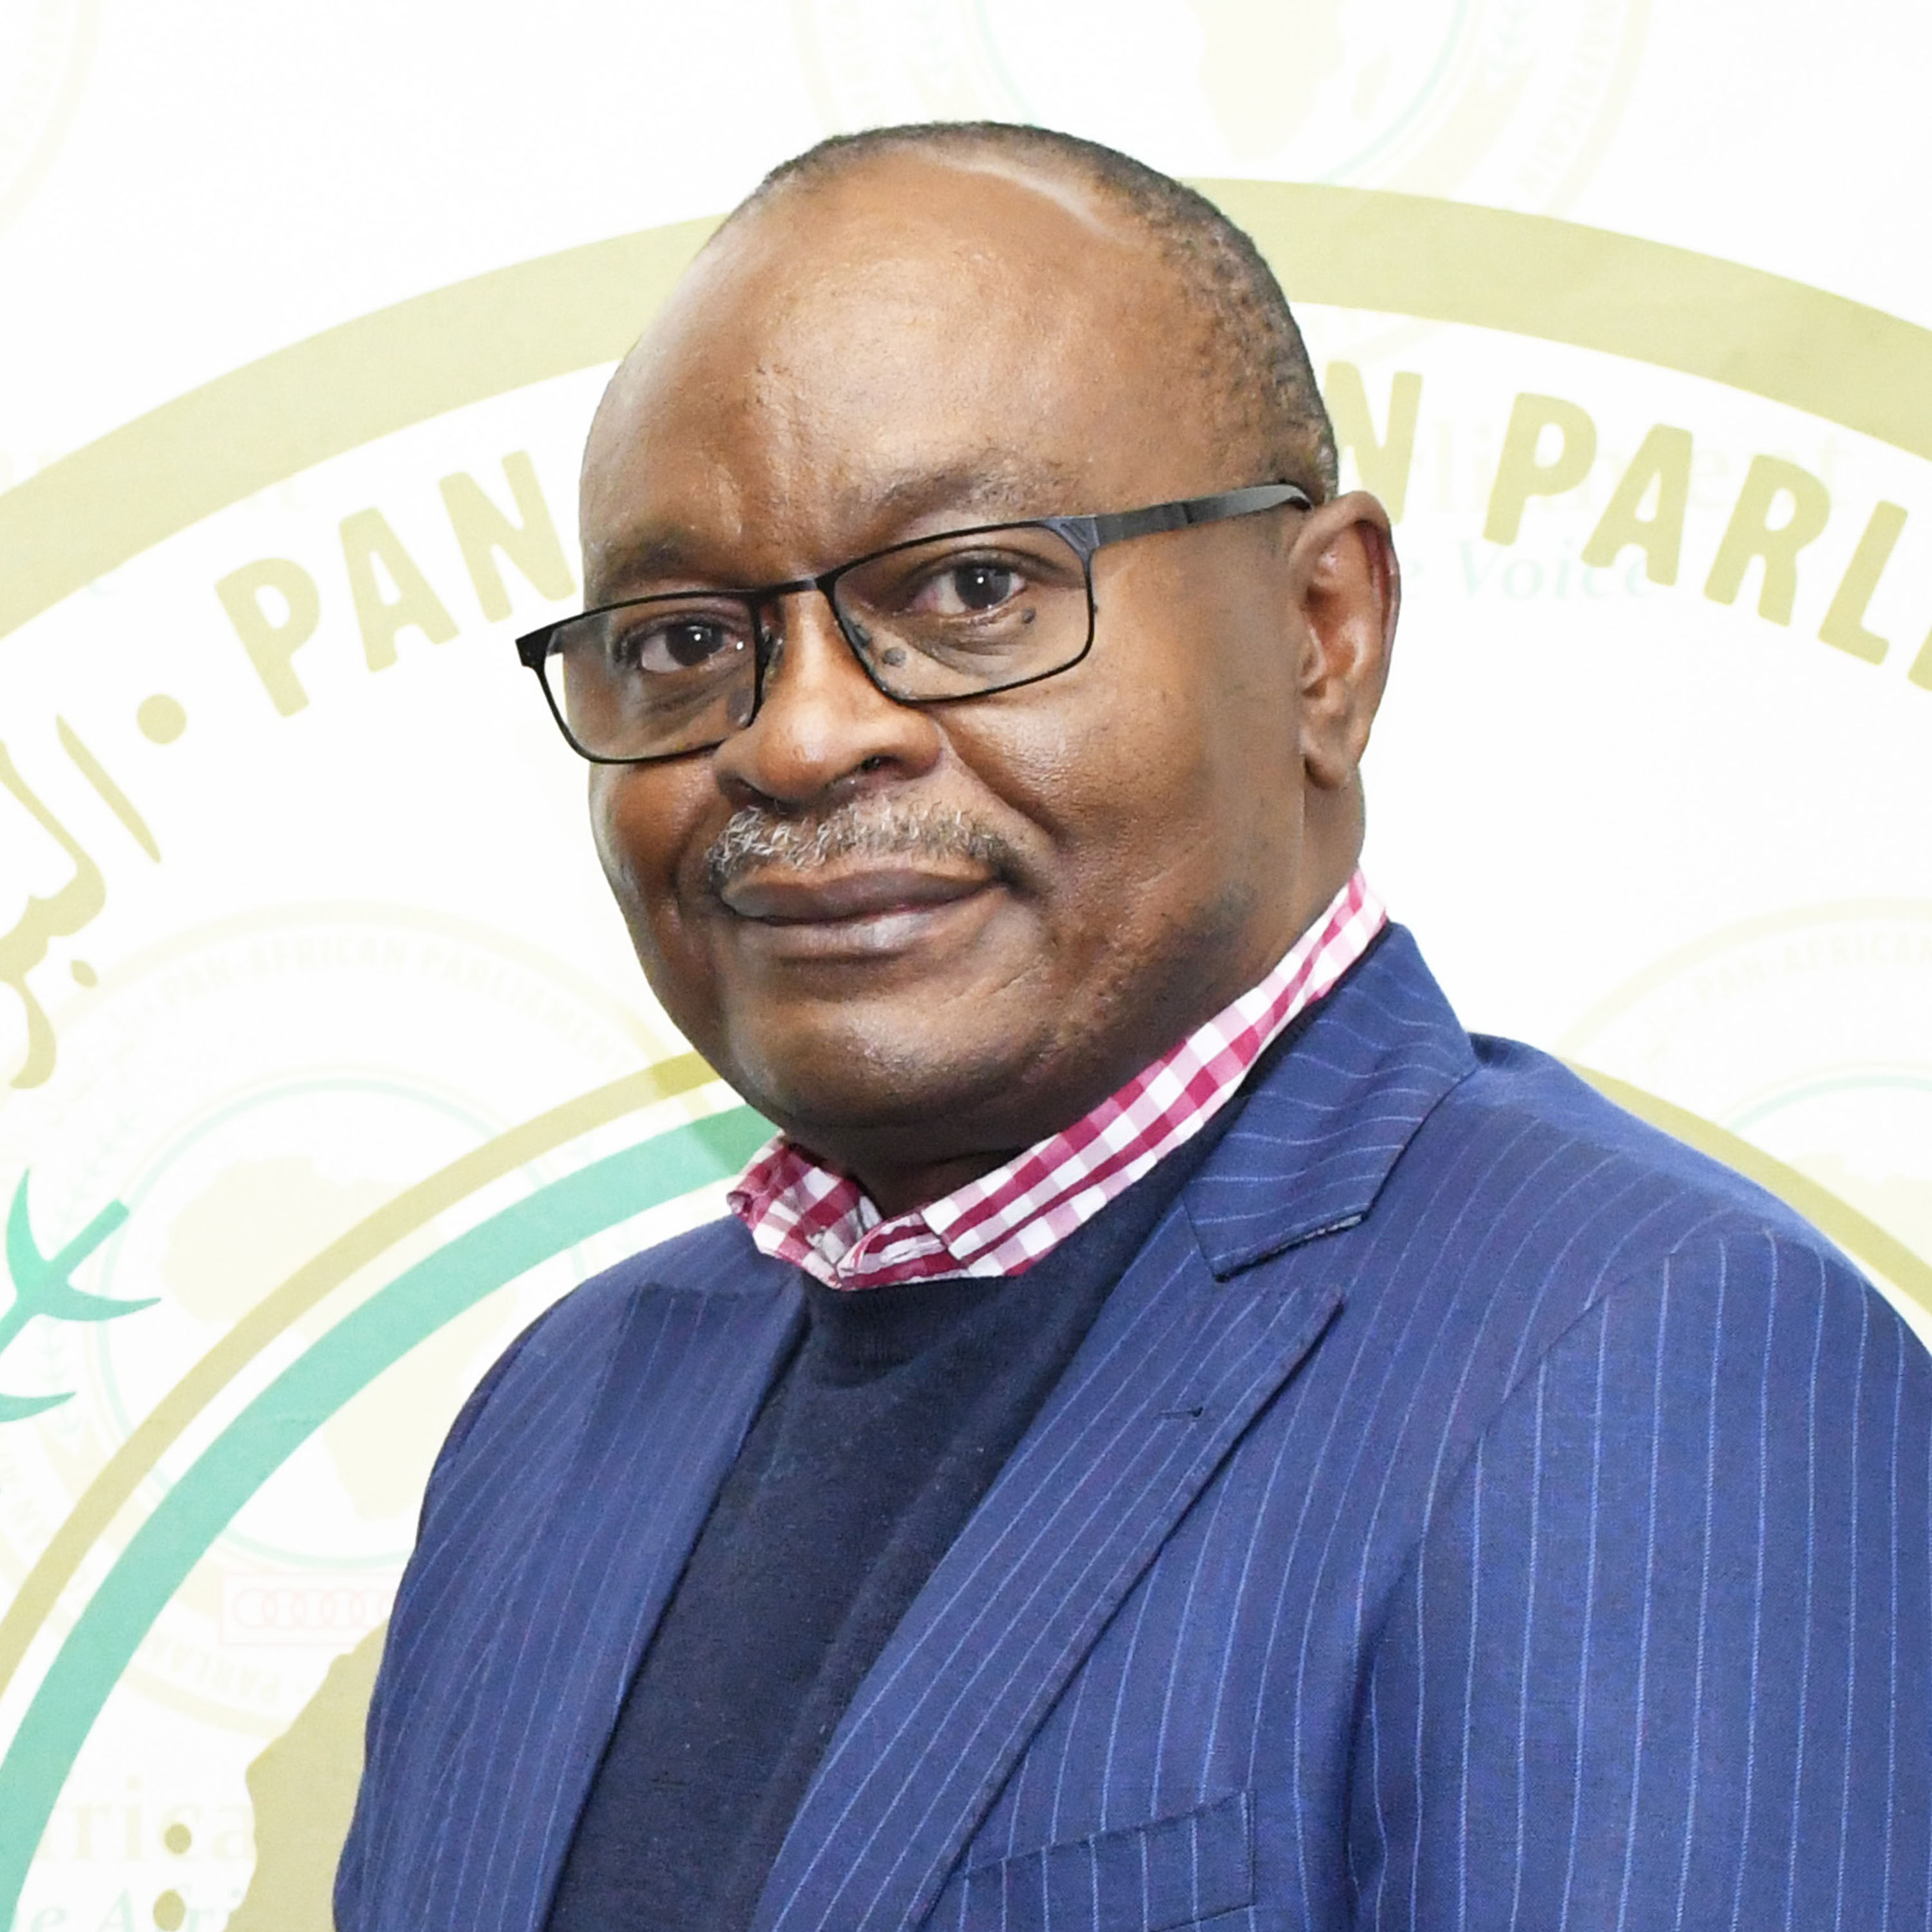 Hon. Didier Molisho Sadi